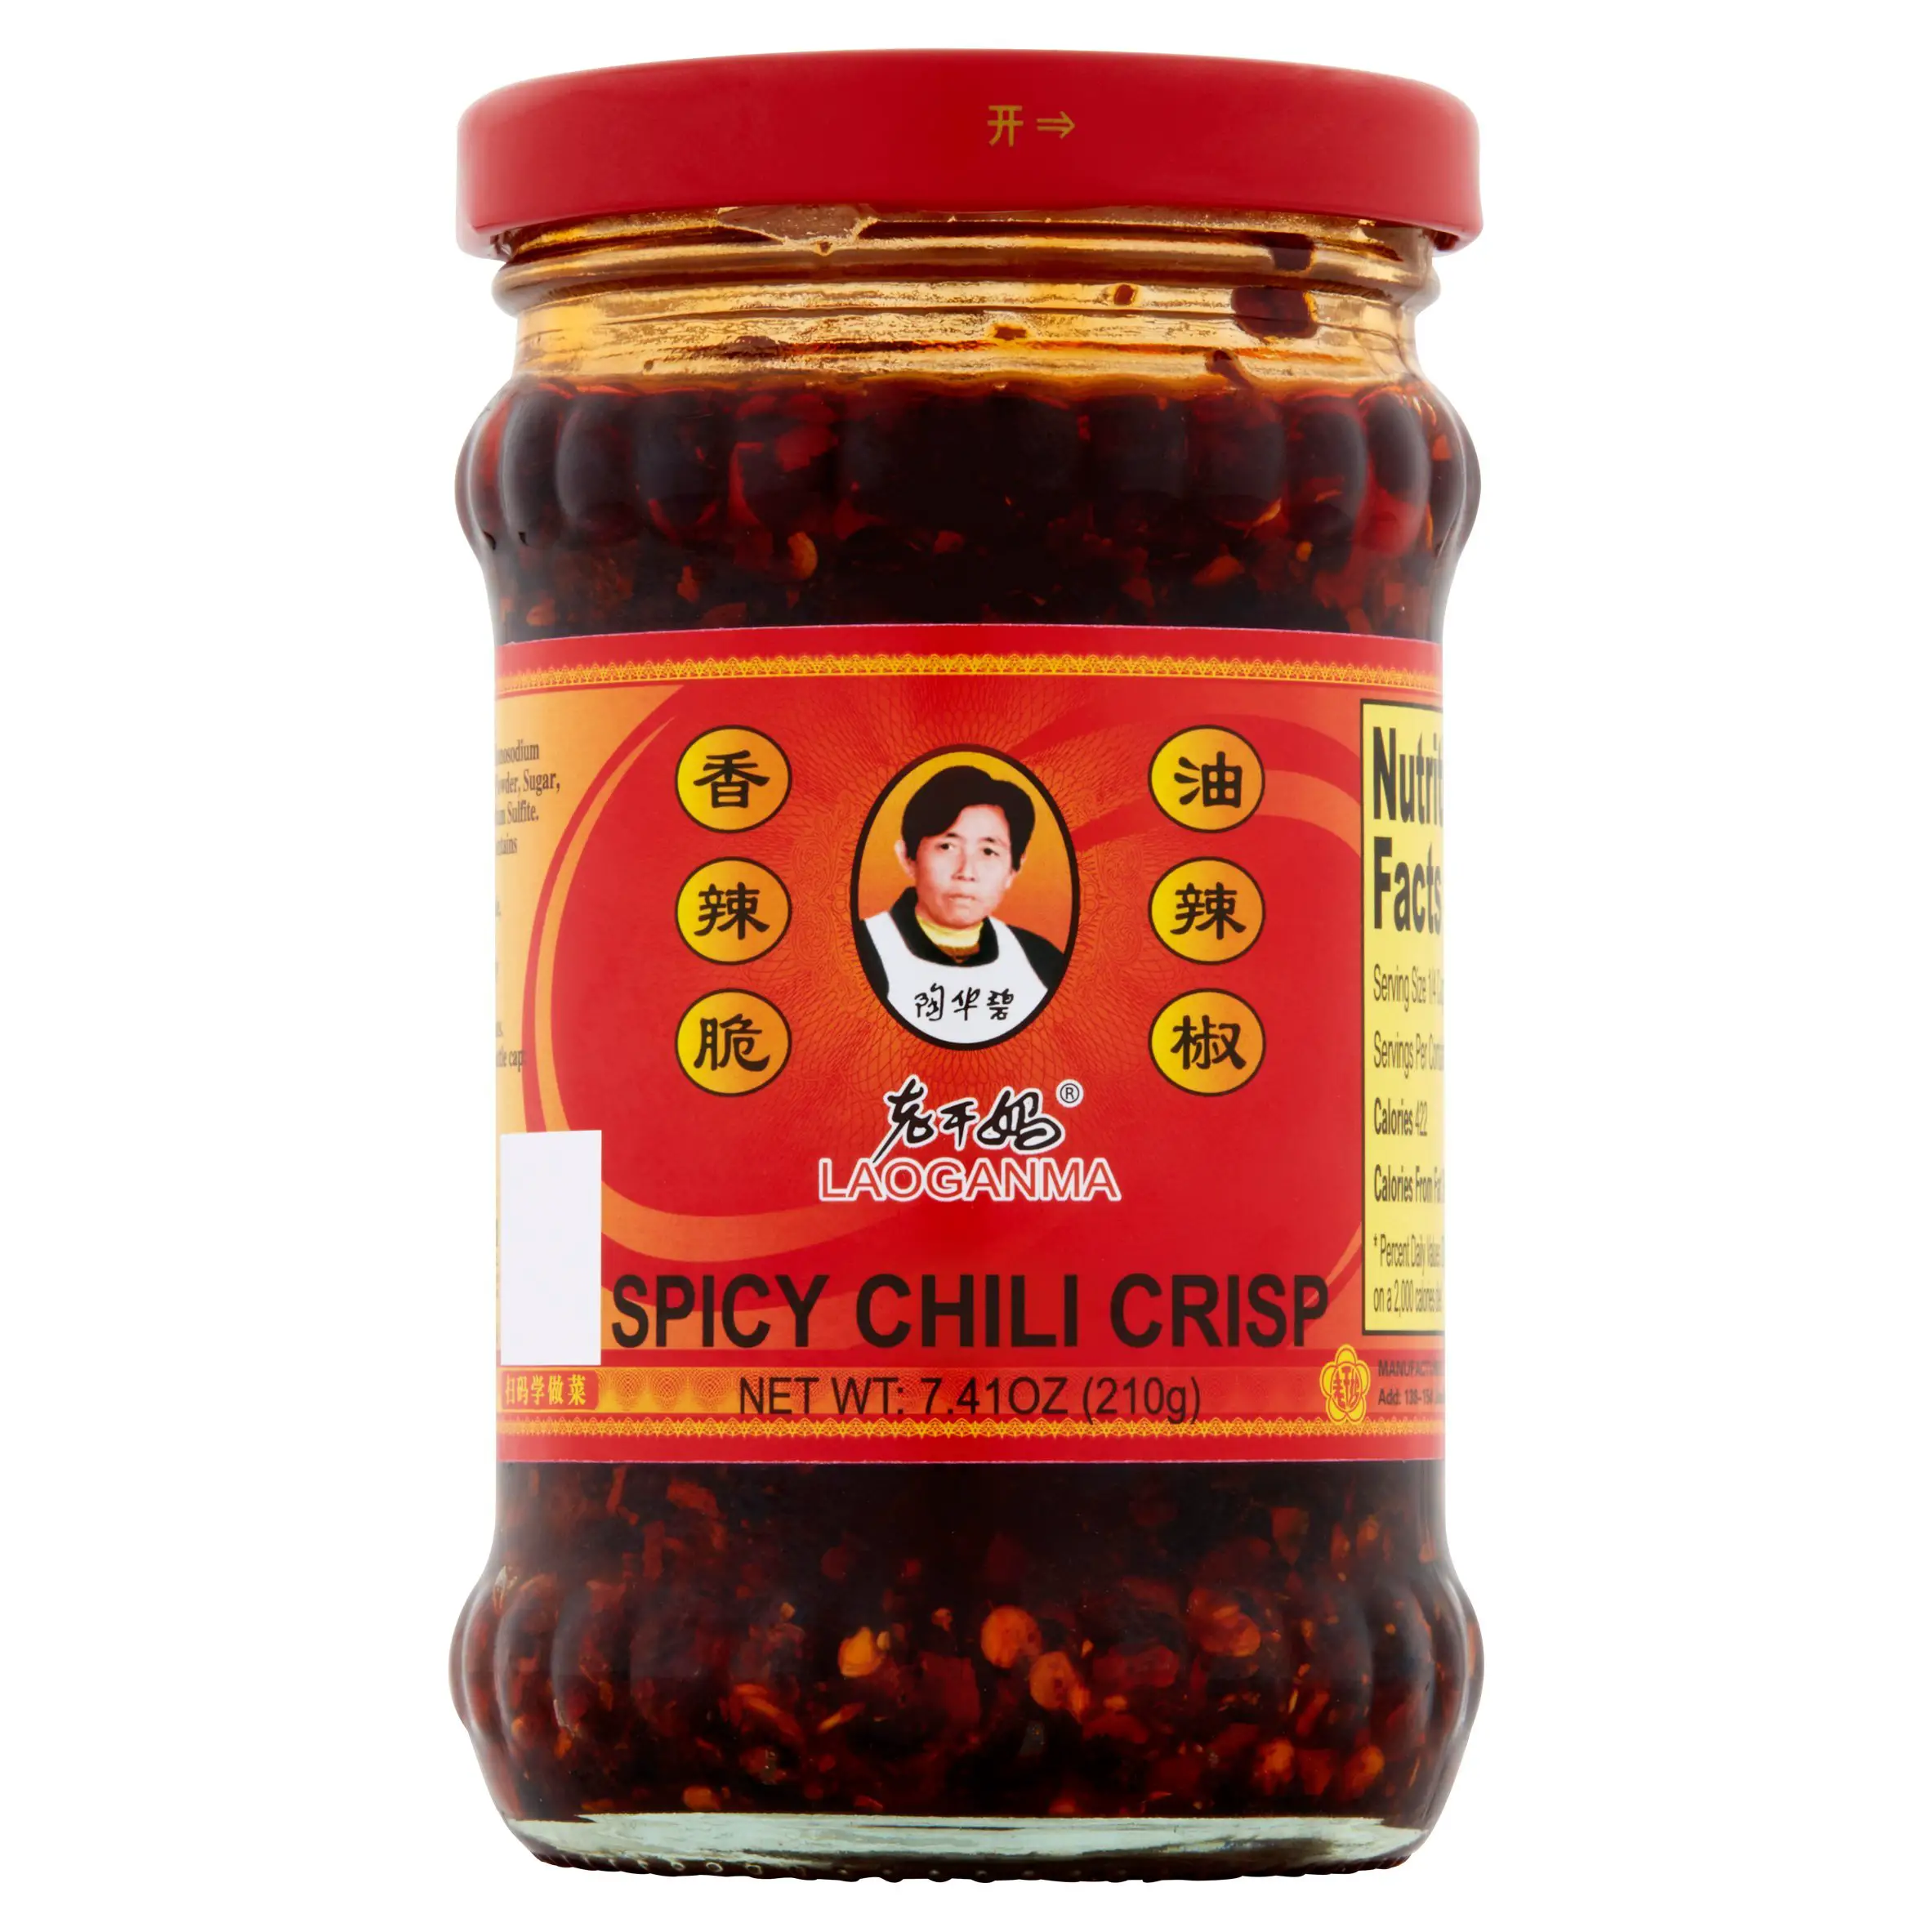 (3 Pack) Laoganma Spicy Chili Crisp Sauce, 7.41 Fl Oz